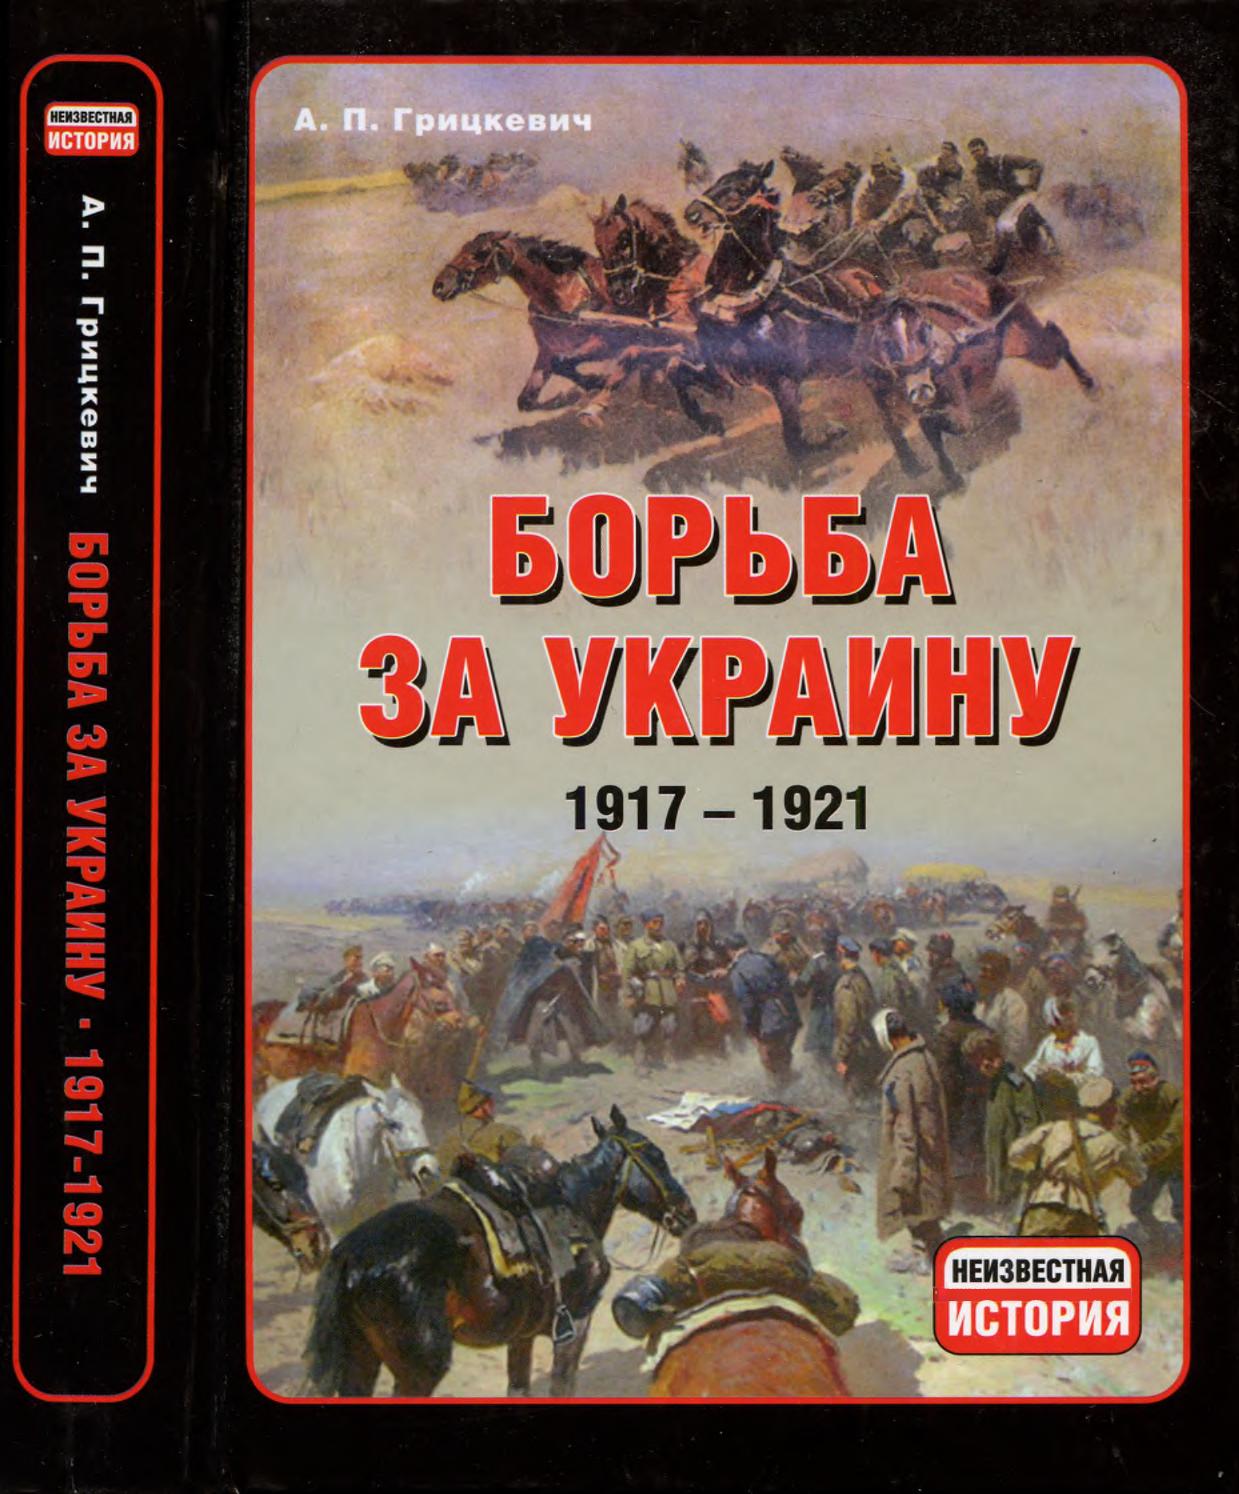 Борьба за Украину. 1917-1921. Часть 1-3, 2011, Анатолий Грицкевич